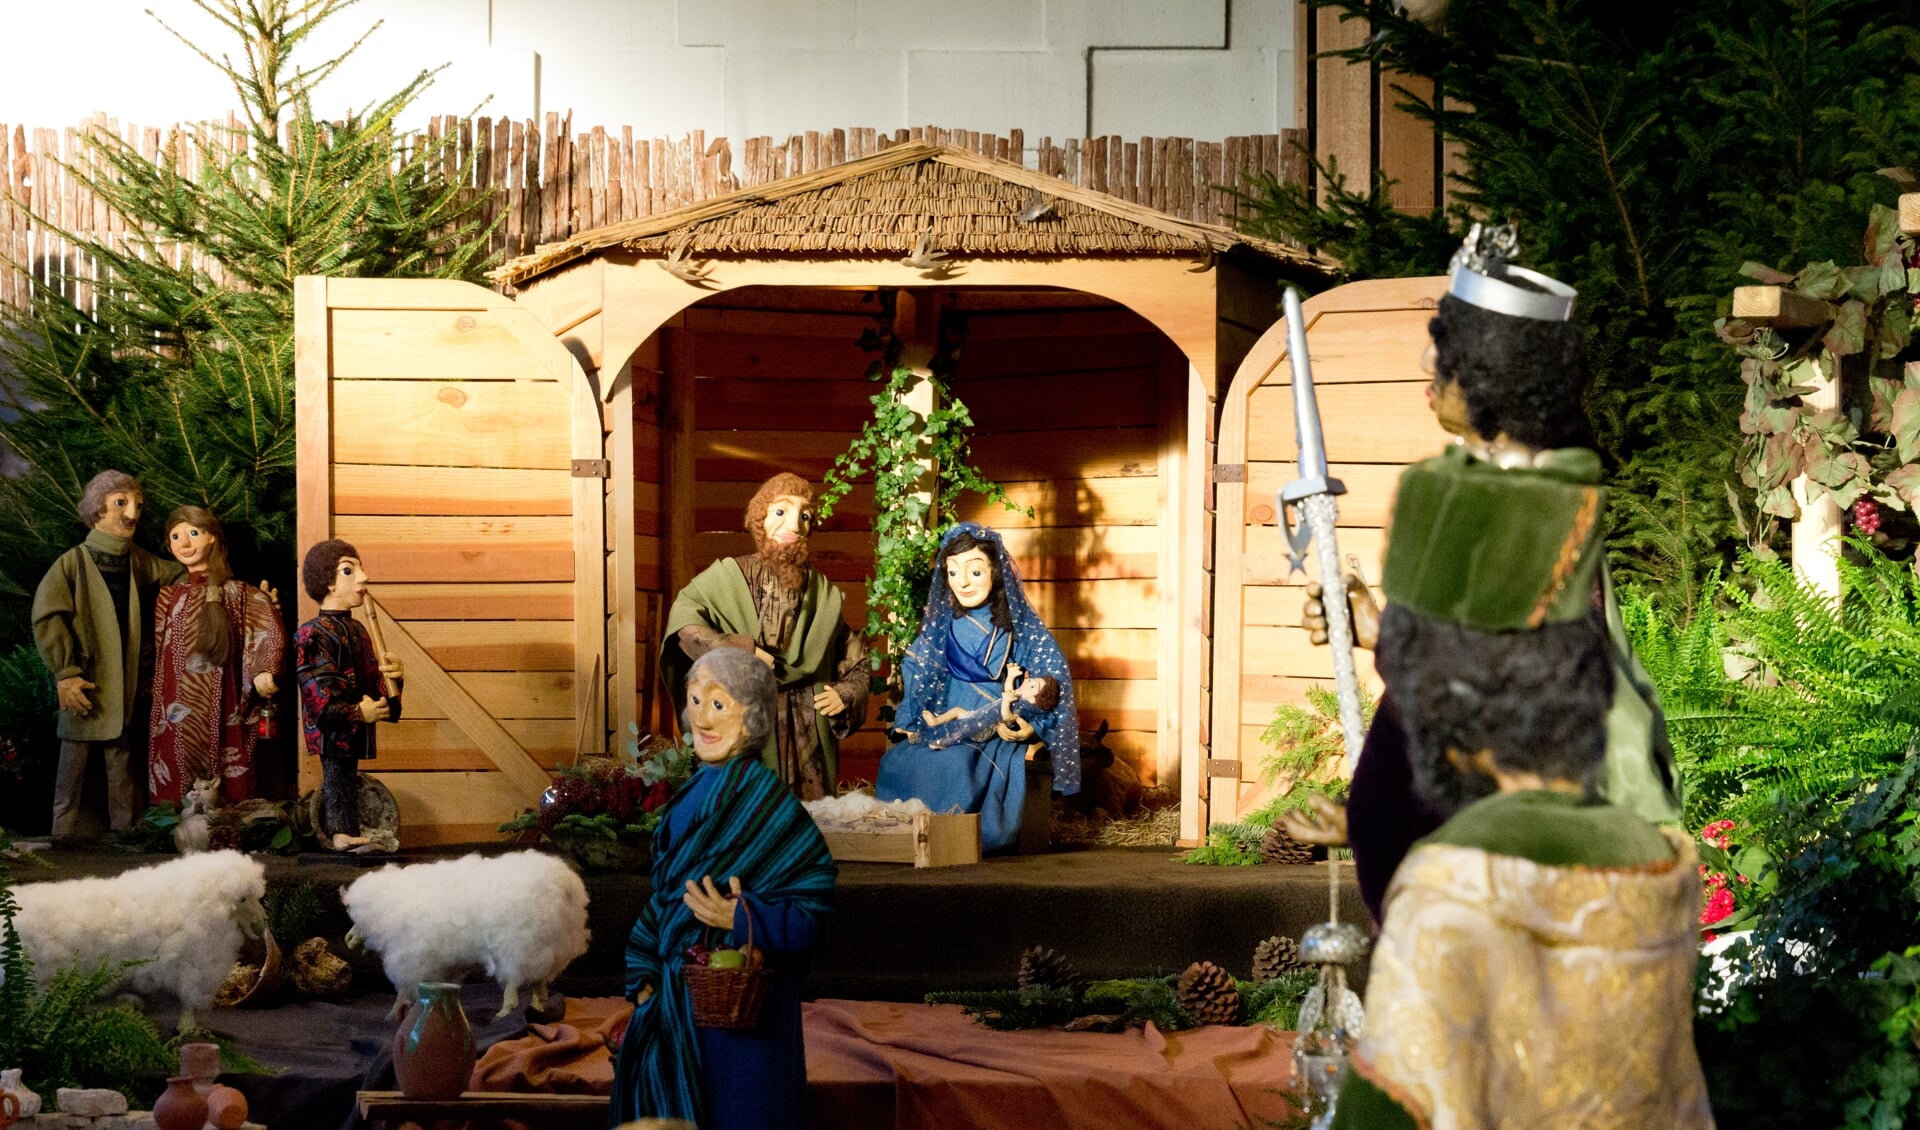 Kerststal Nicolaaskerk, Odijk van kunstenares Thea Lammers 